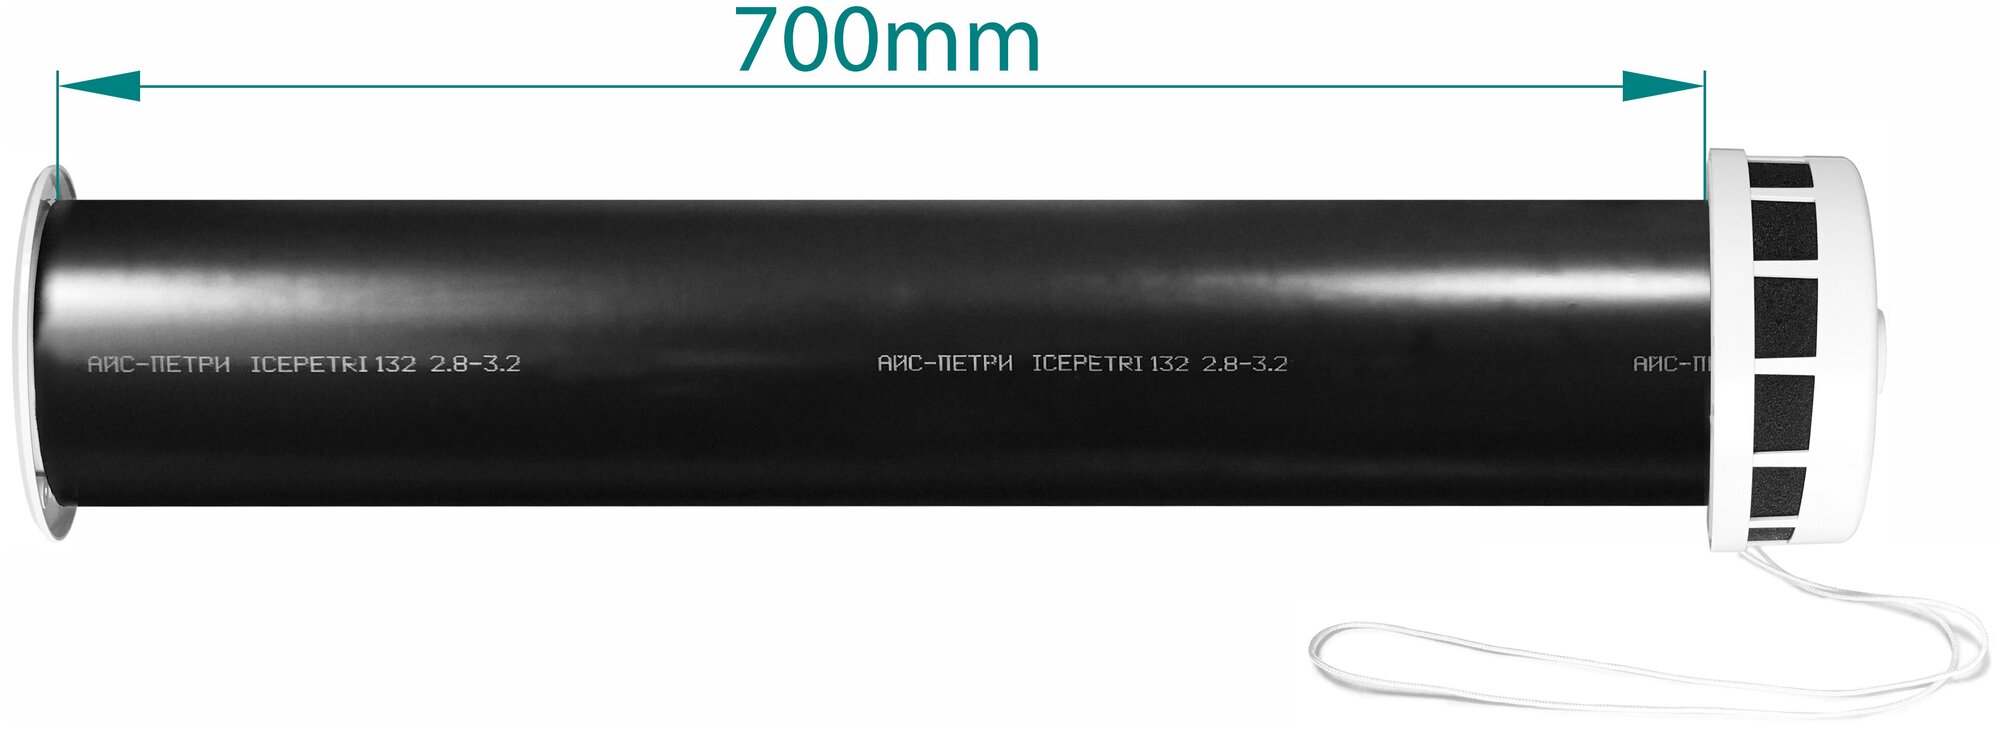 Приточный клапан КИВ-125 icepetri 700мм с к. базальтом и ivory ASA-пластиковой реш. в фирменной коробке - фотография № 2